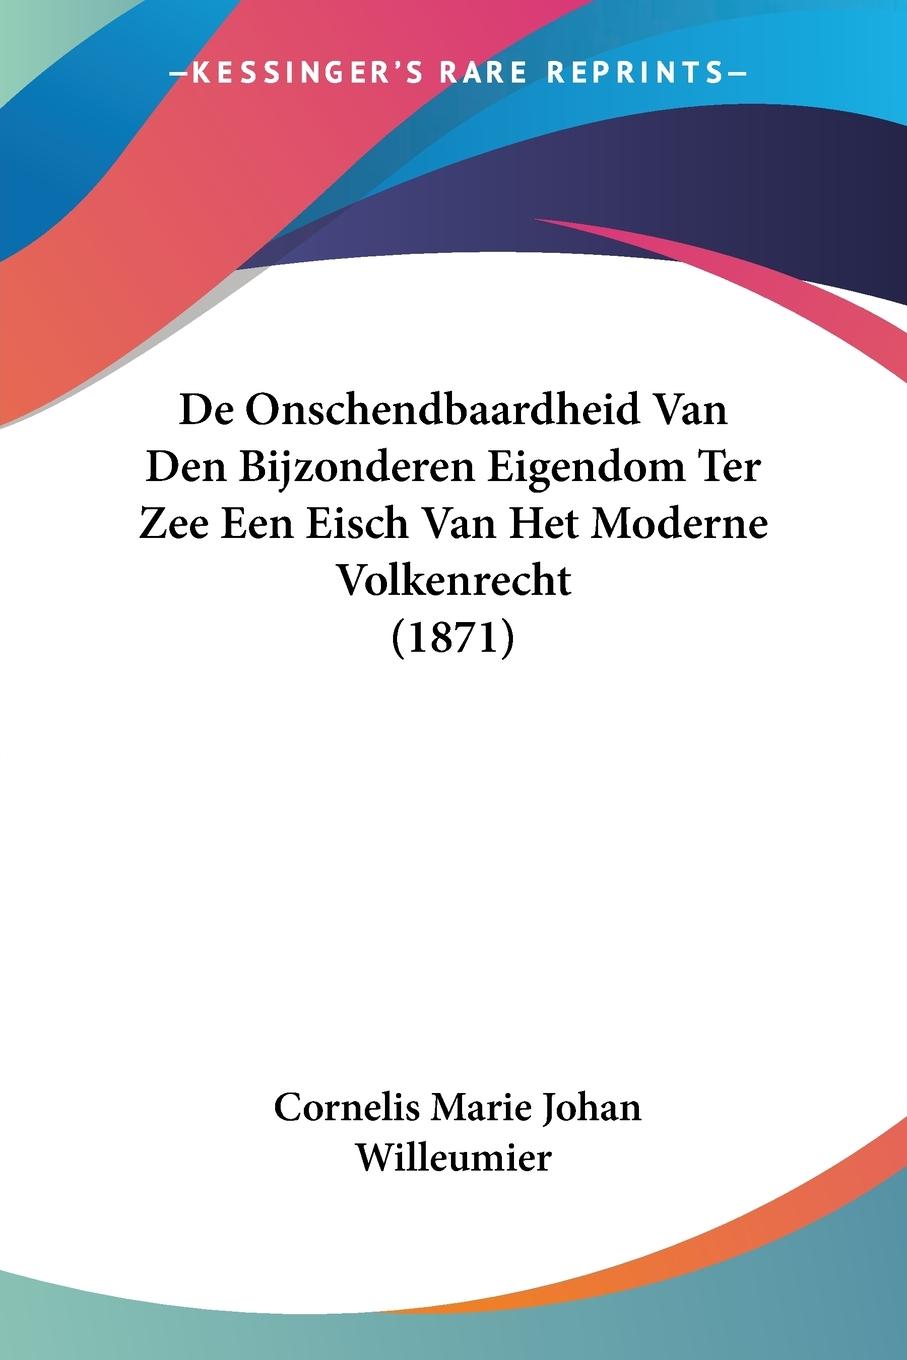 De Onschendbaardheid Van Den Bijzonderen Eigendom Ter Zee Een Eisch Van Het Moderne Volkenrecht (1871) - Willeumier, Cornelis Marie Johan